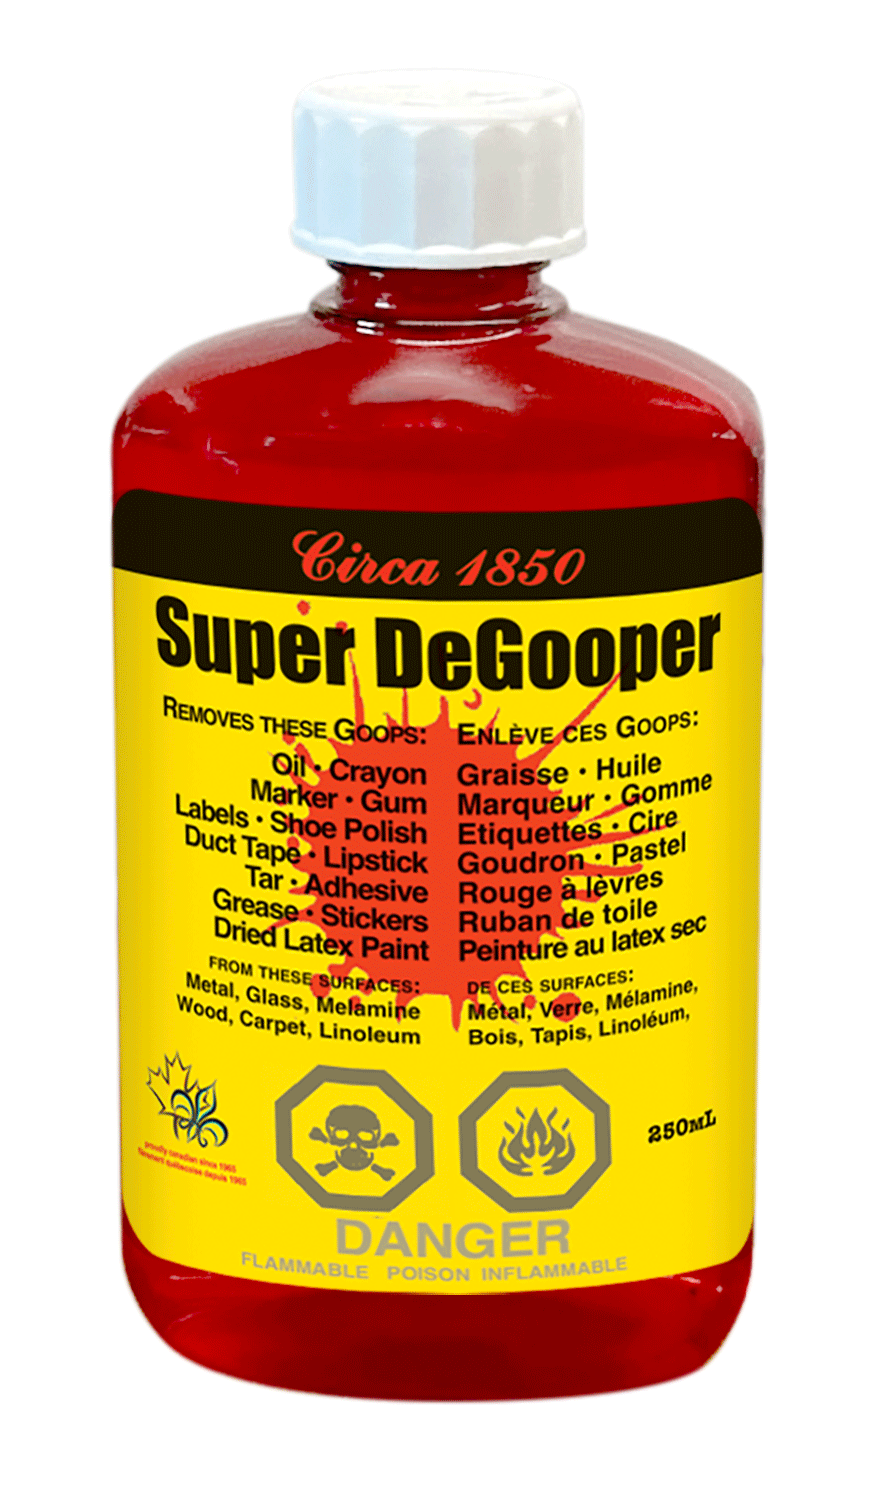 Circa 1850 Super DeGooper